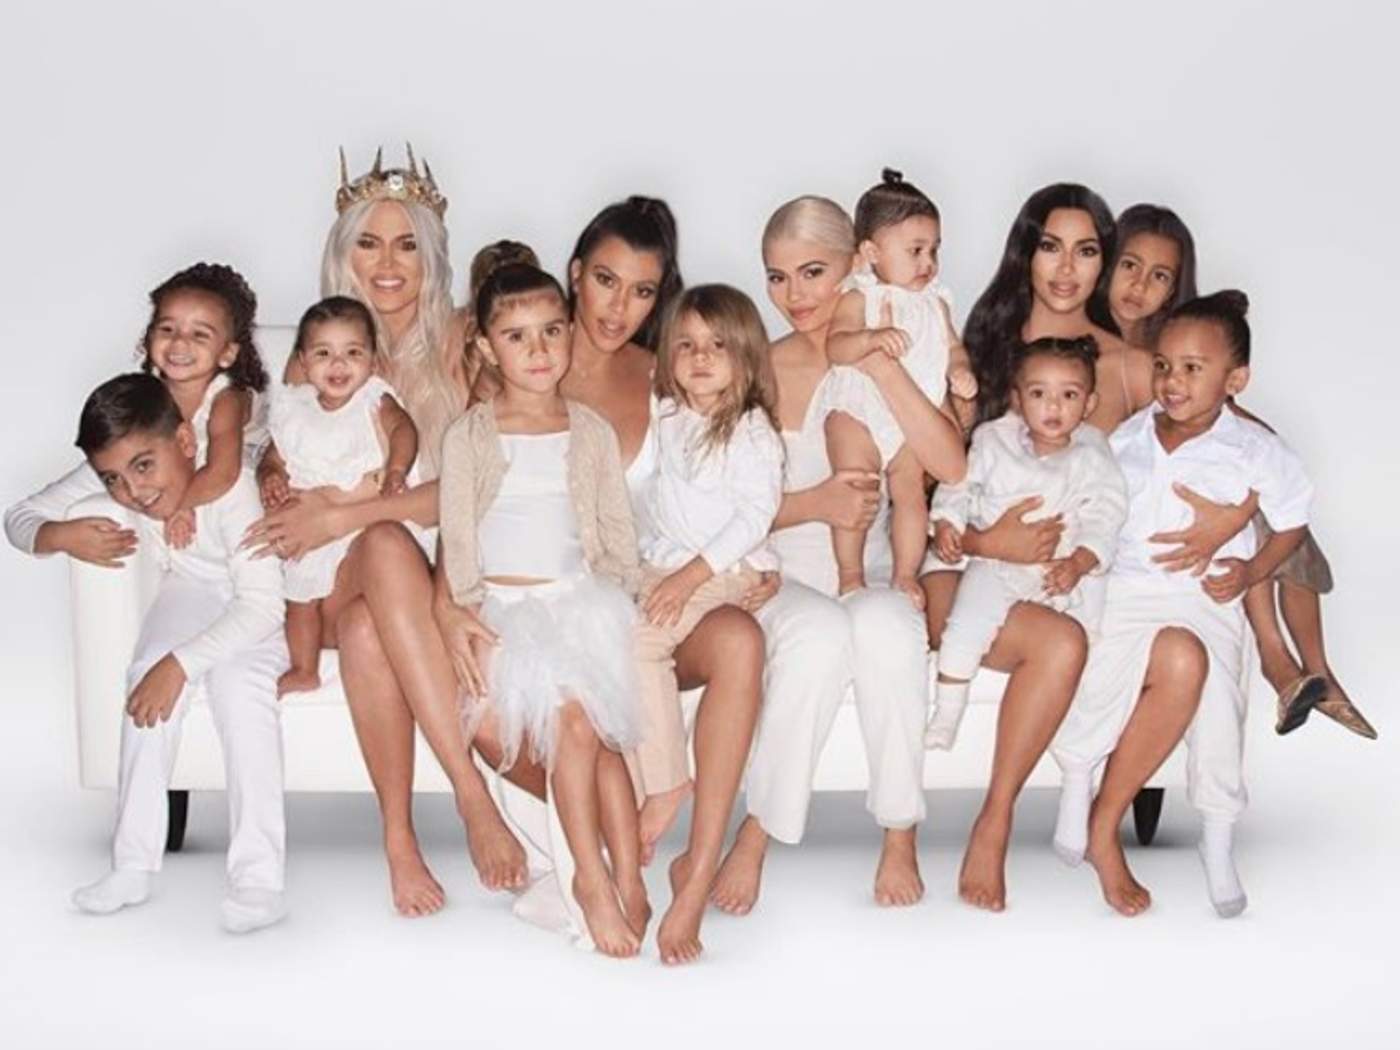 Como cada año, el Clan Kardashian-Jenner publicó su postal navideña. (ESPECIAL)